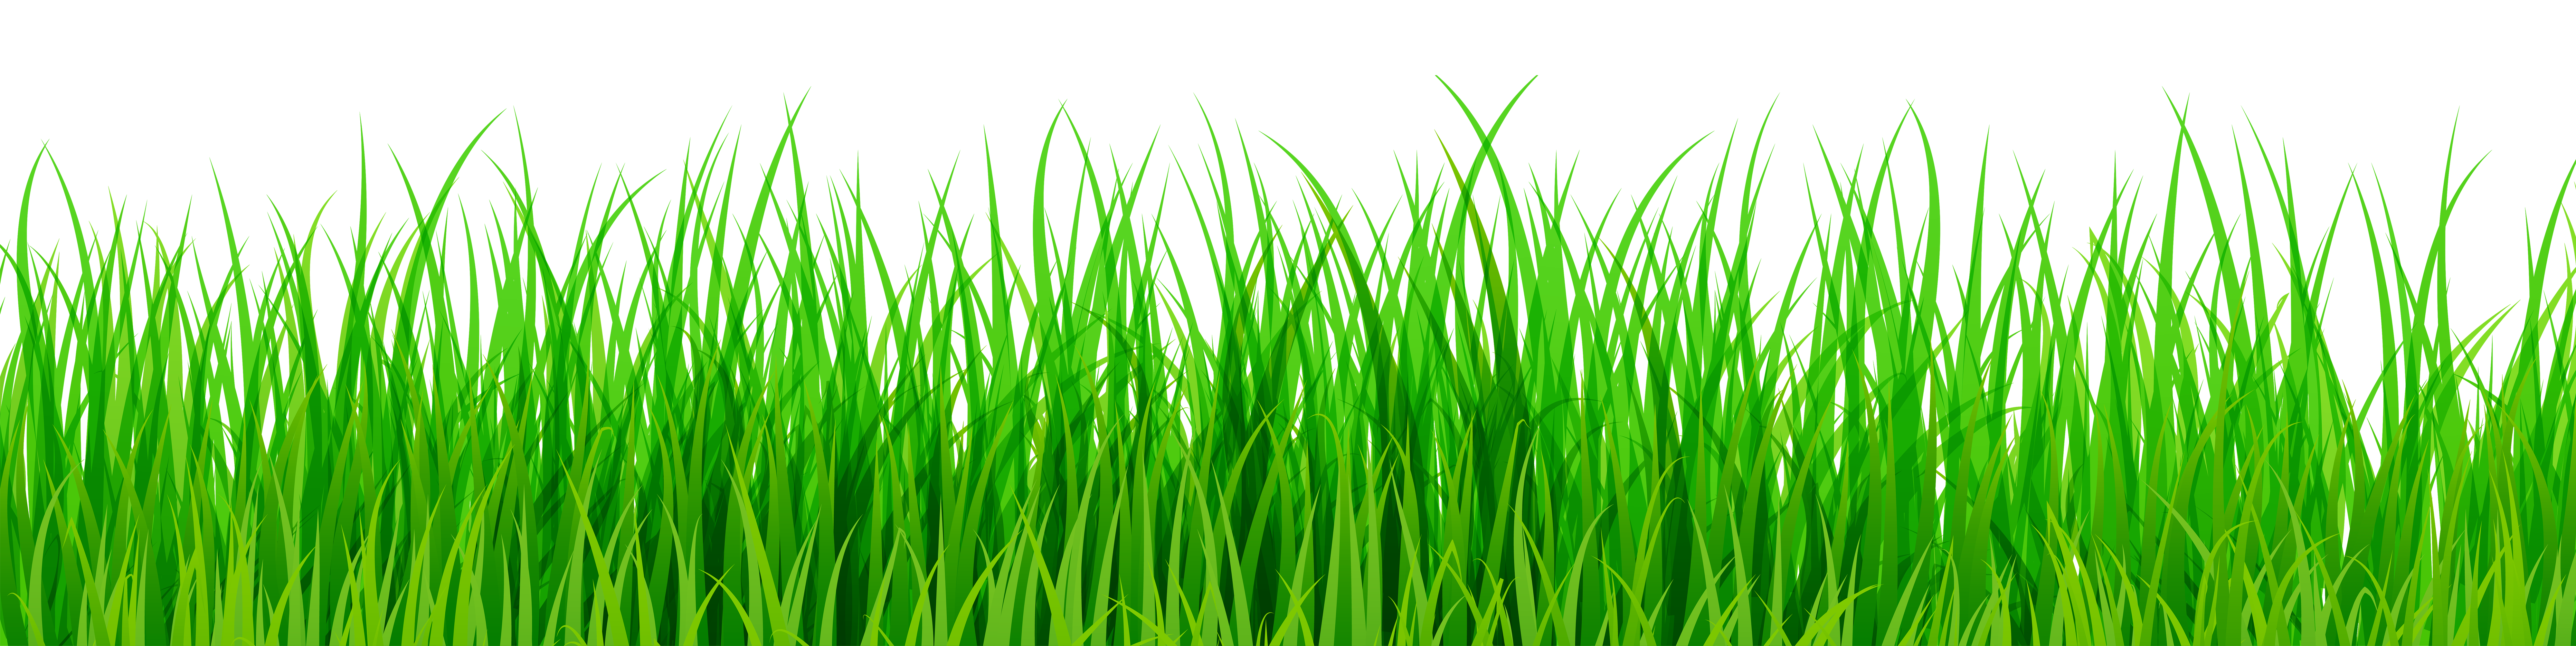 grass clipart green